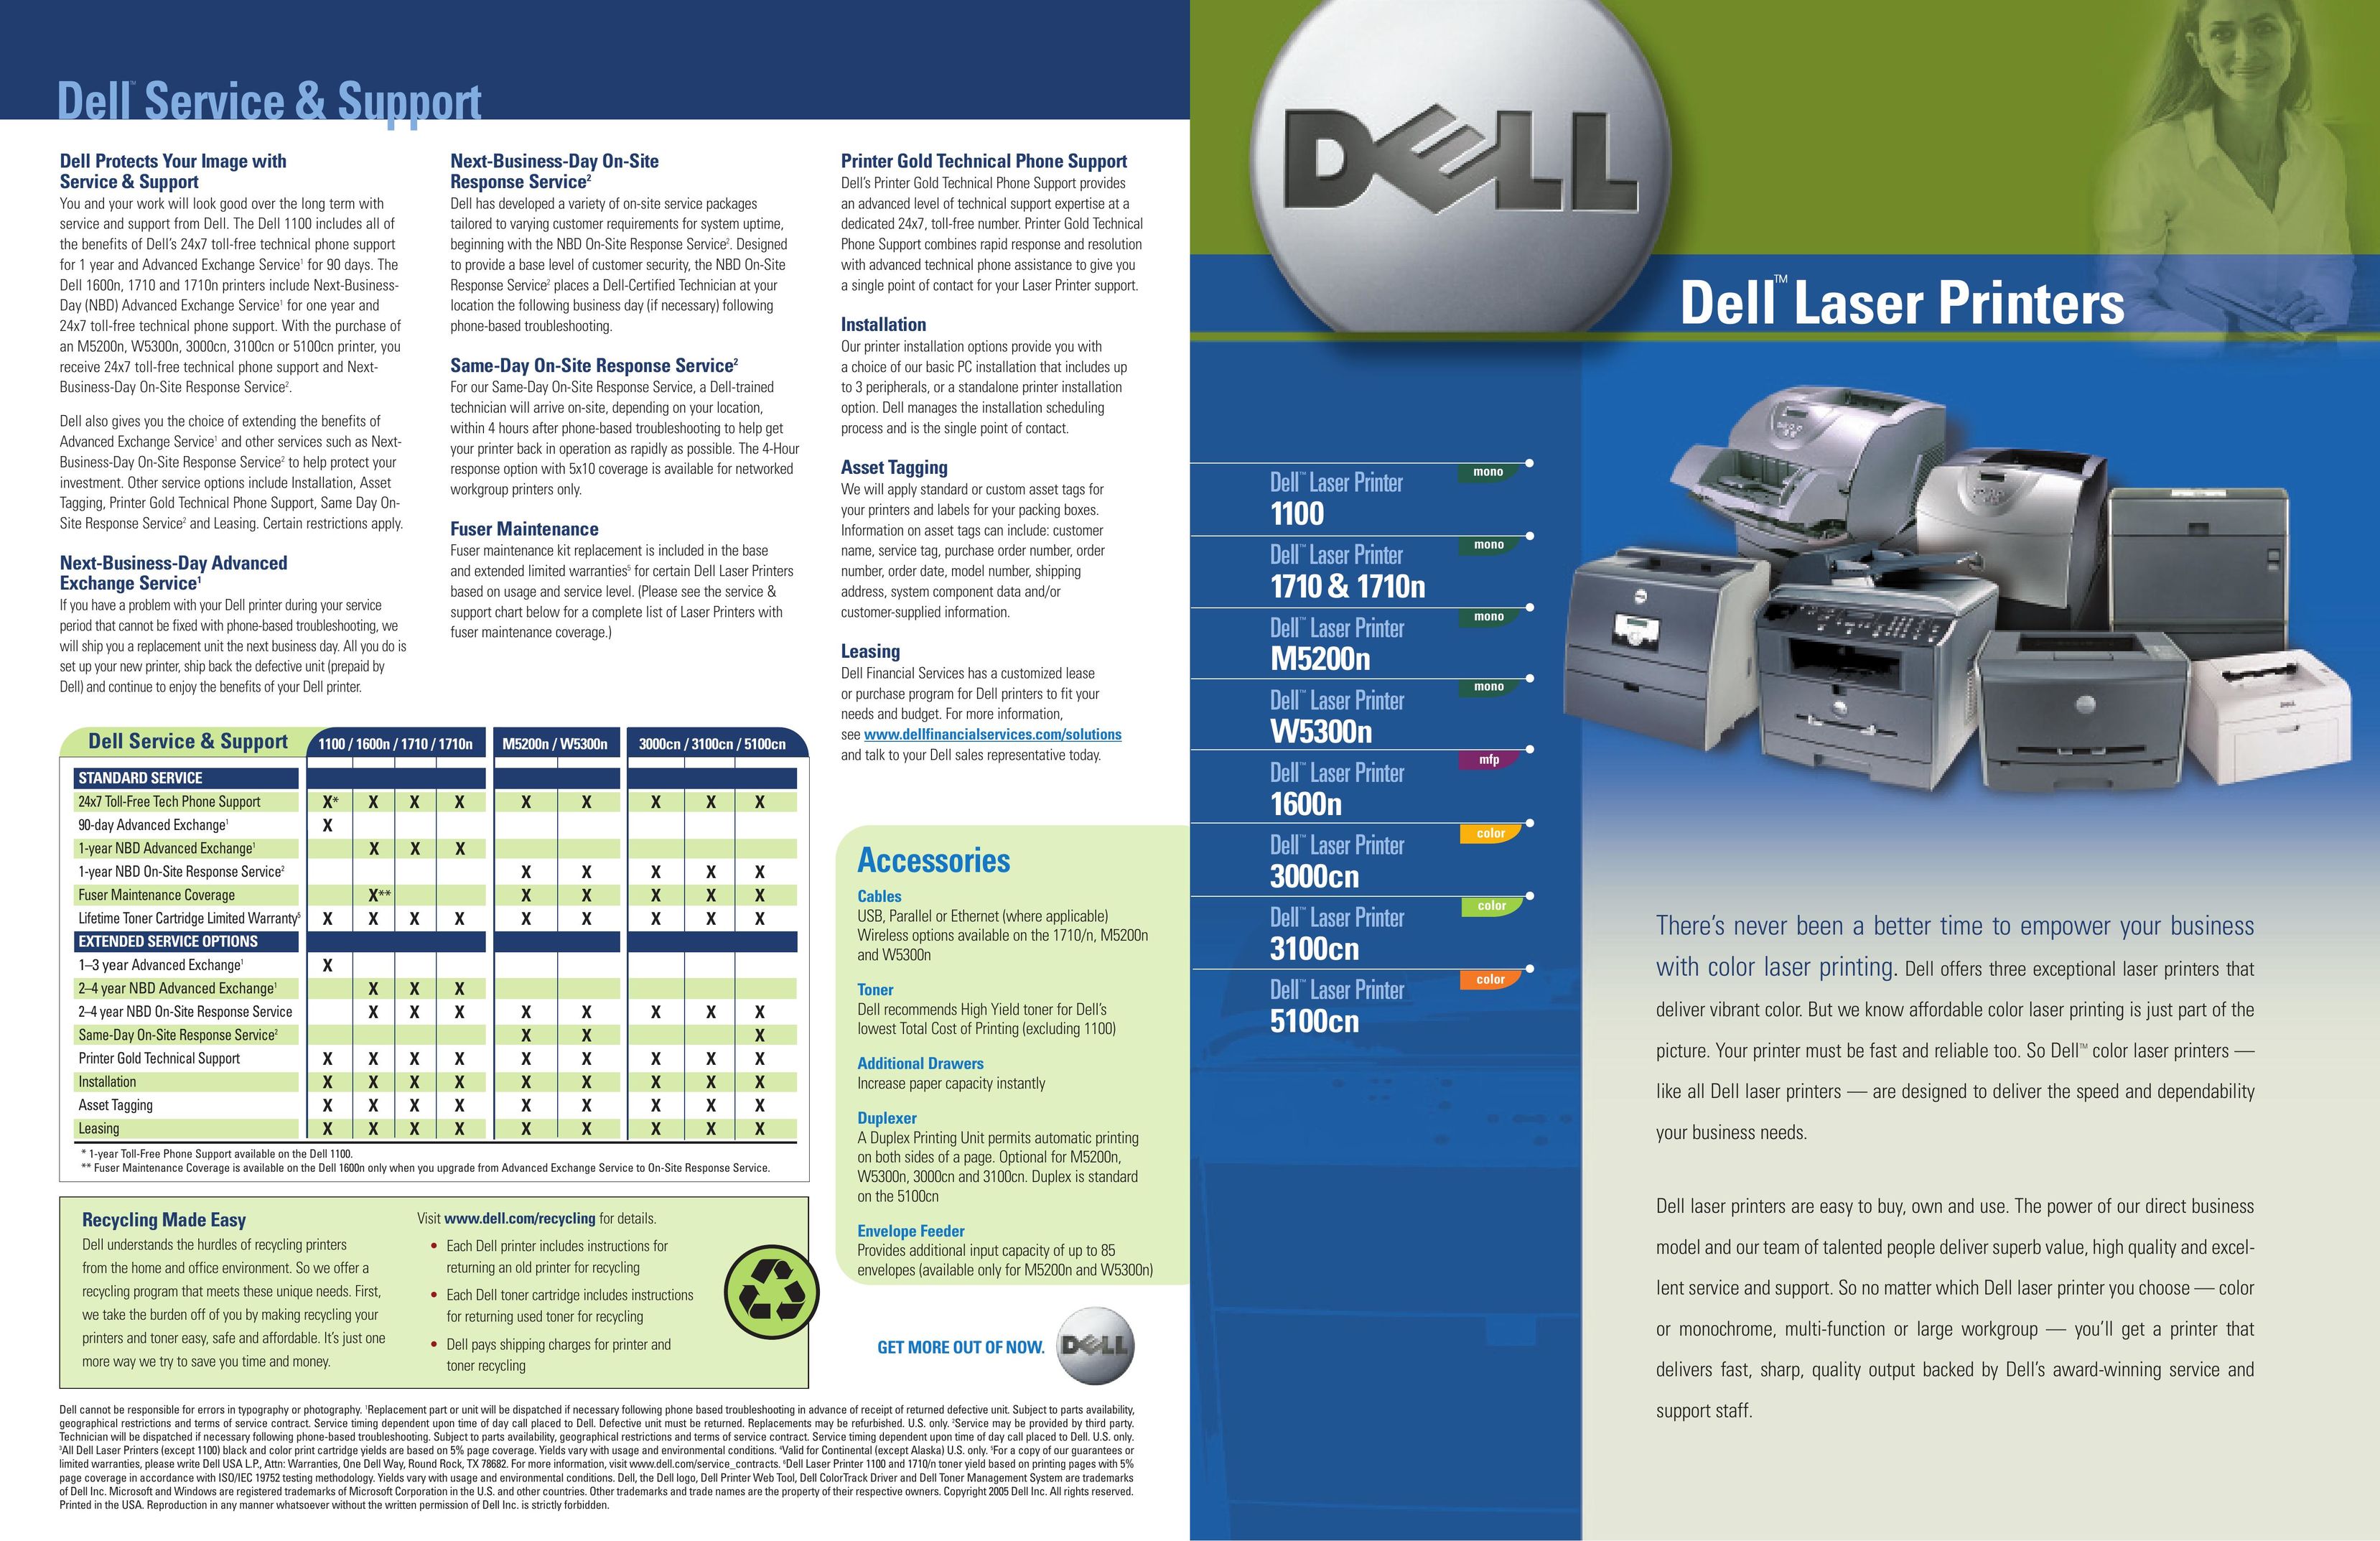 Dell 1600n Printer User Manual